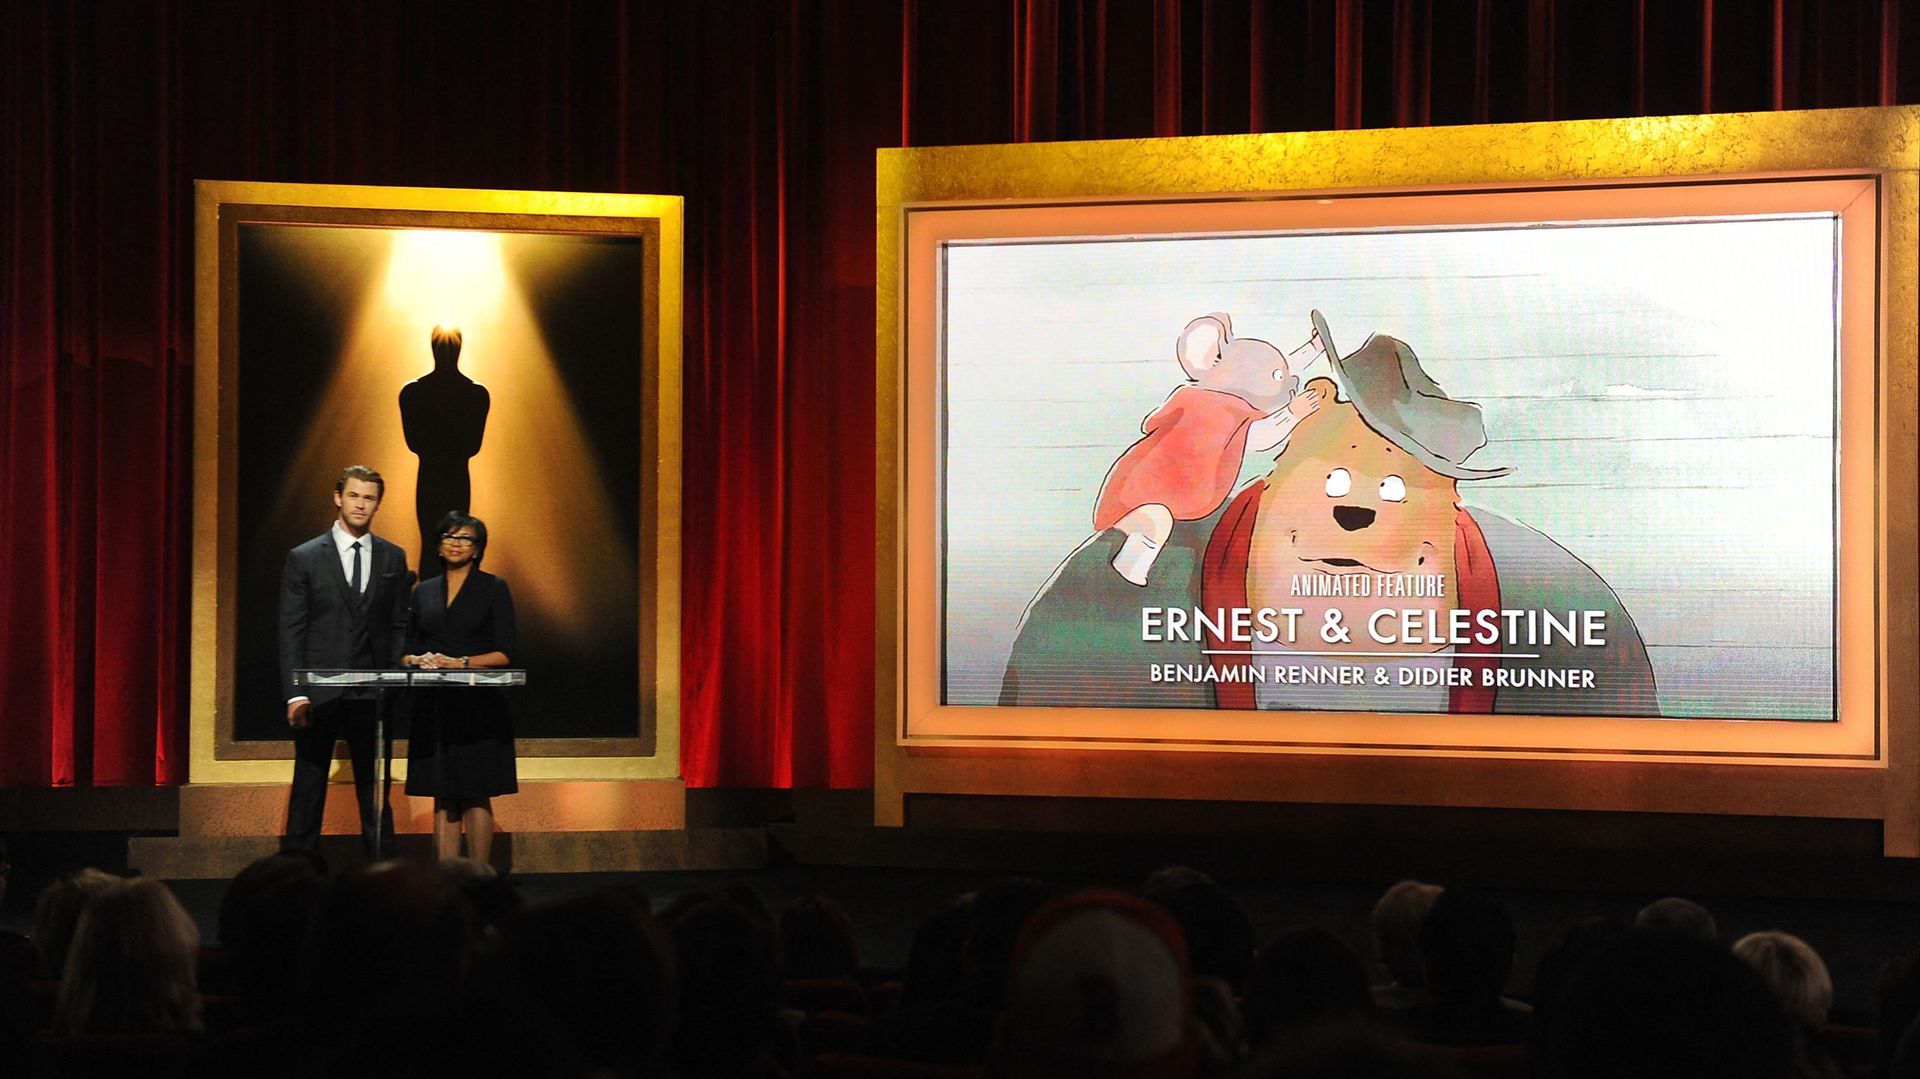 Le film d'animation "Ernest et Célestine", réalisé en 2012 par Stéphane Aubier, Vincent Patar et Benjamin Renner à partir des albums, lors de sa nomination aux Oscars en 2014. Le film a également été couronné du César du Meilleur film d'animation en 2013.